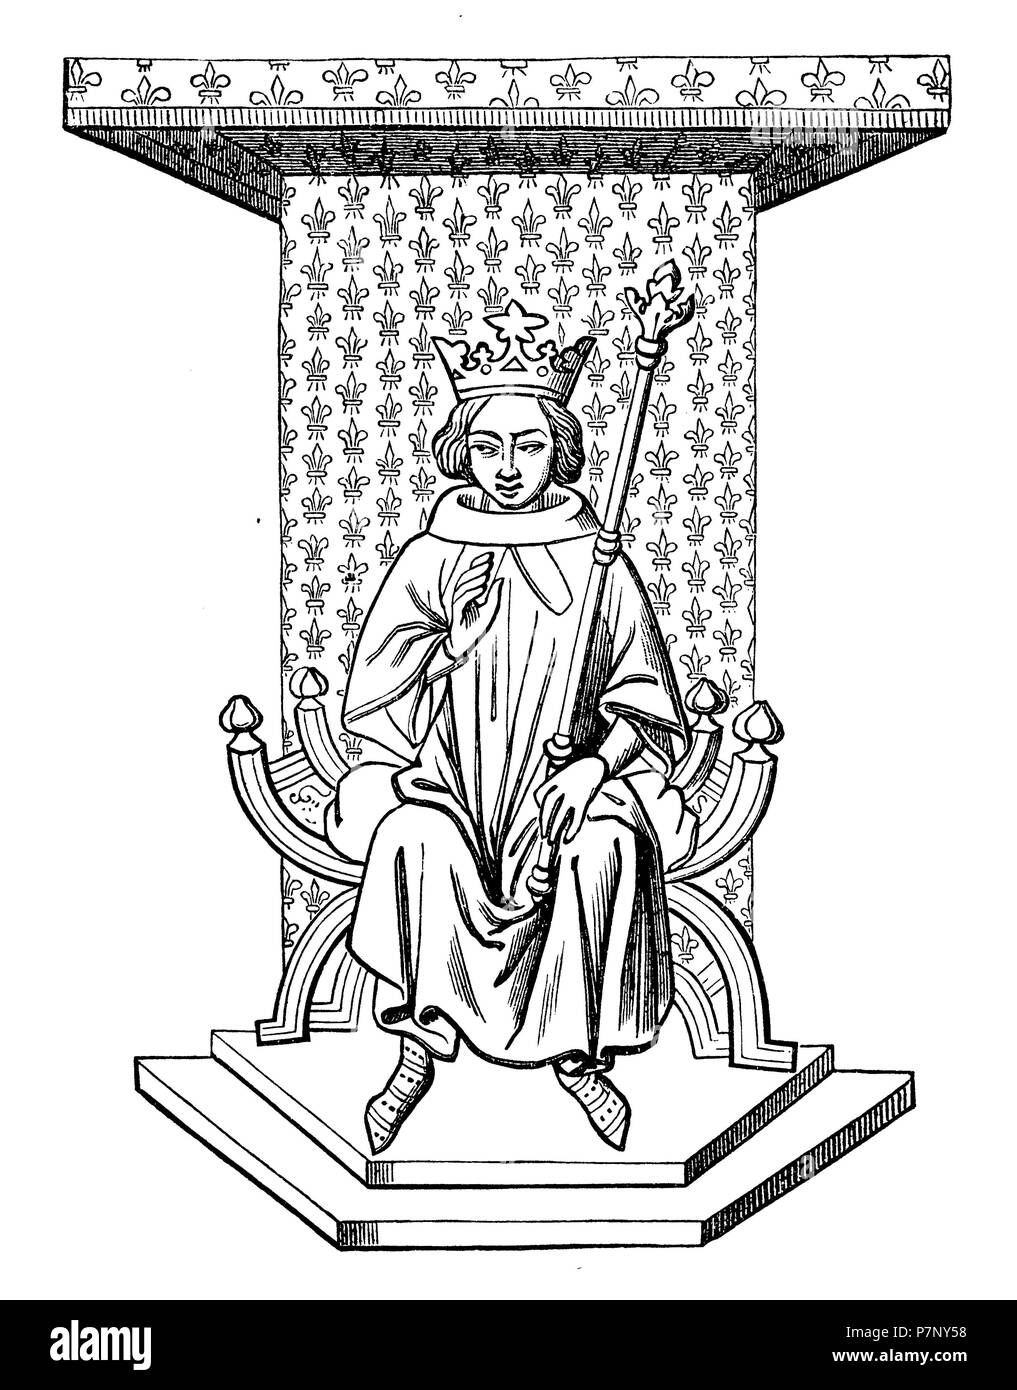 Le roi Louis IX de France sur le trône. Après une miniature du xive siècle de la Bibliothèque Nationale de Paris, 1899 Banque D'Images